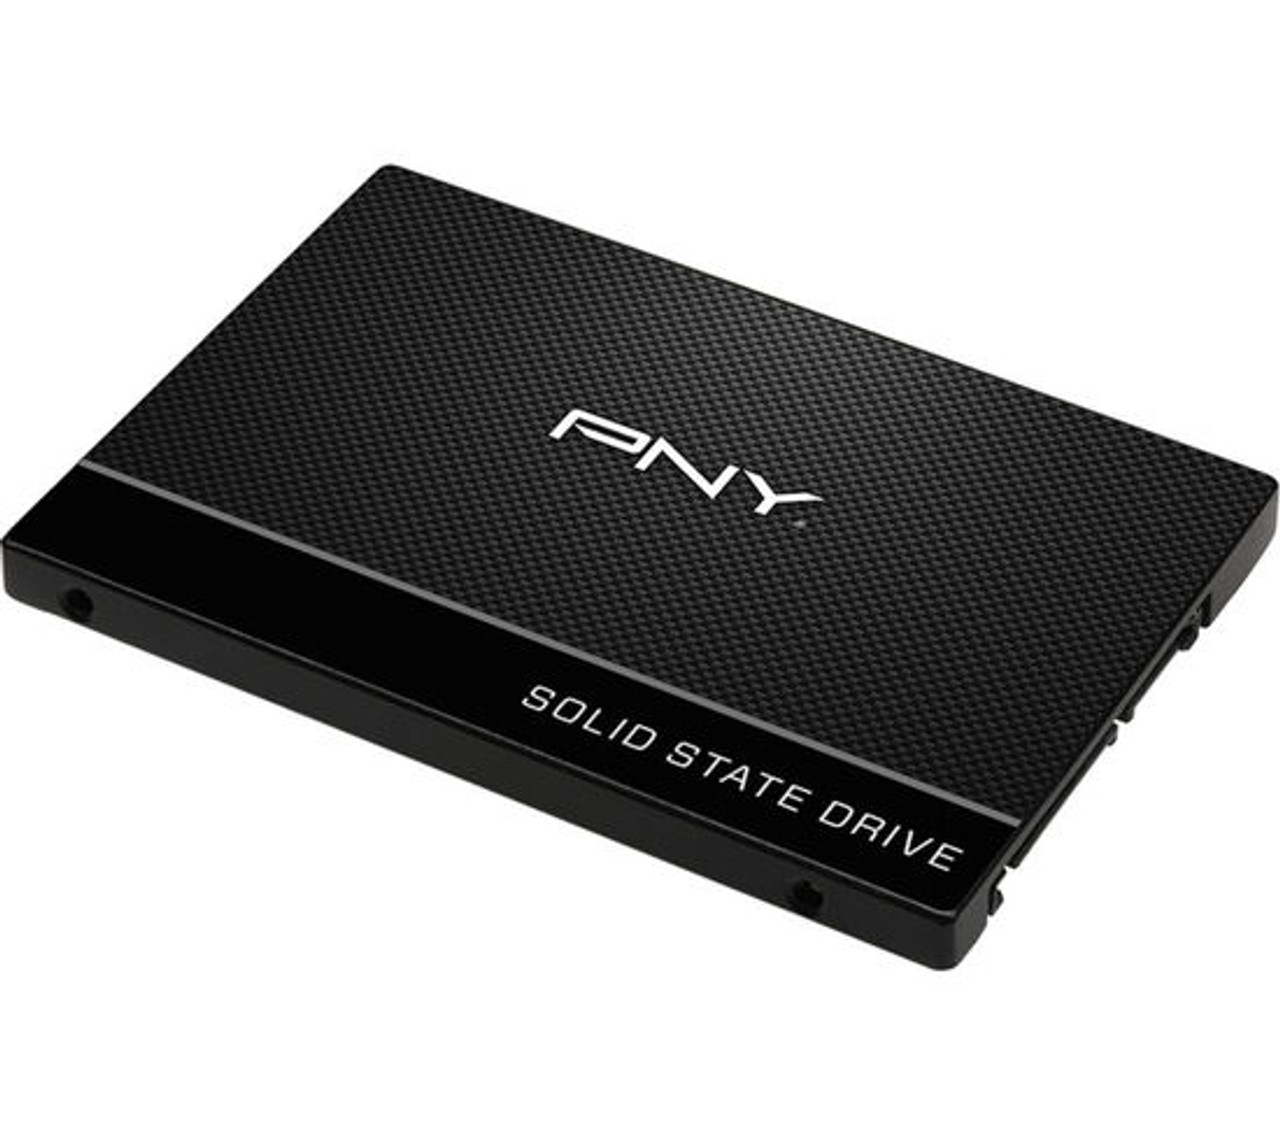 PNY CS900 240GB 2.5 Internal SSD SATA III 6Gb/s SSD Drive - IJT Direct